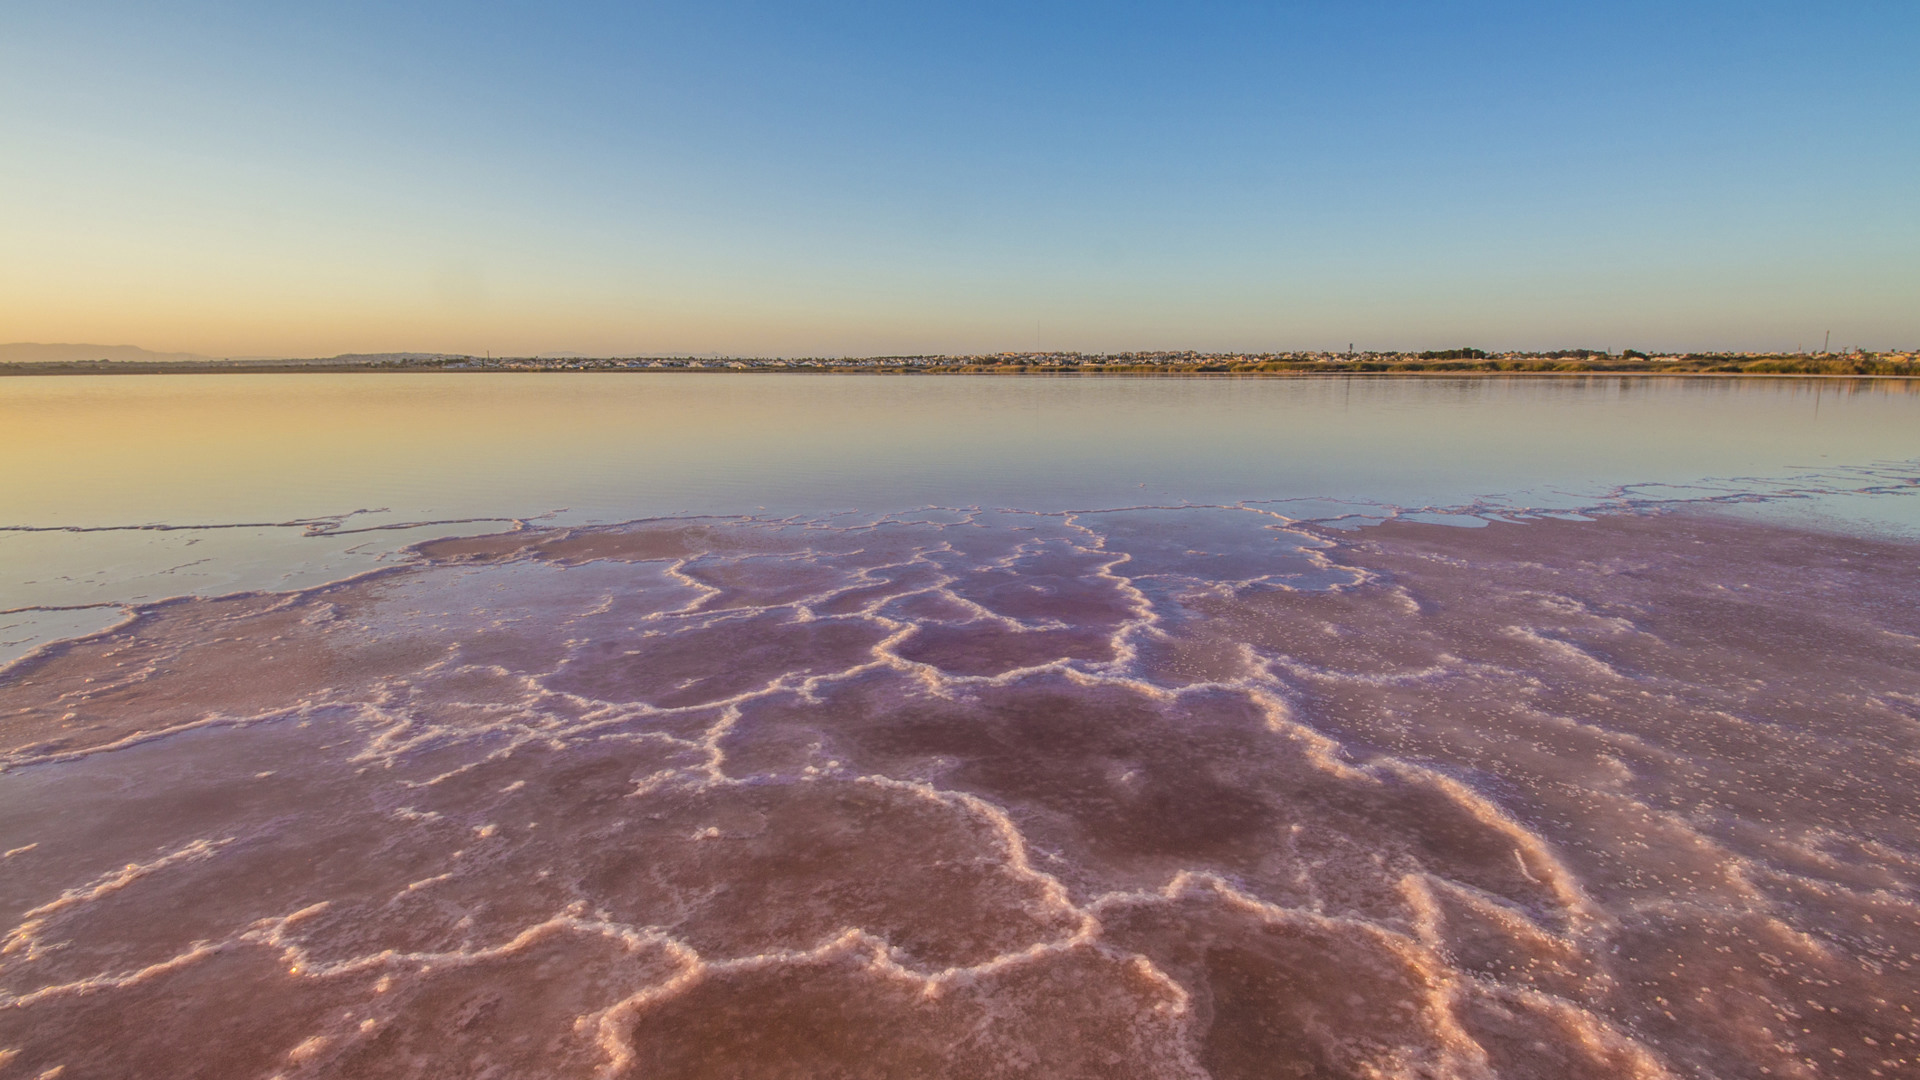 Bezoek de La Mata zoutvlaktes tijdens je vakantie in Alicante